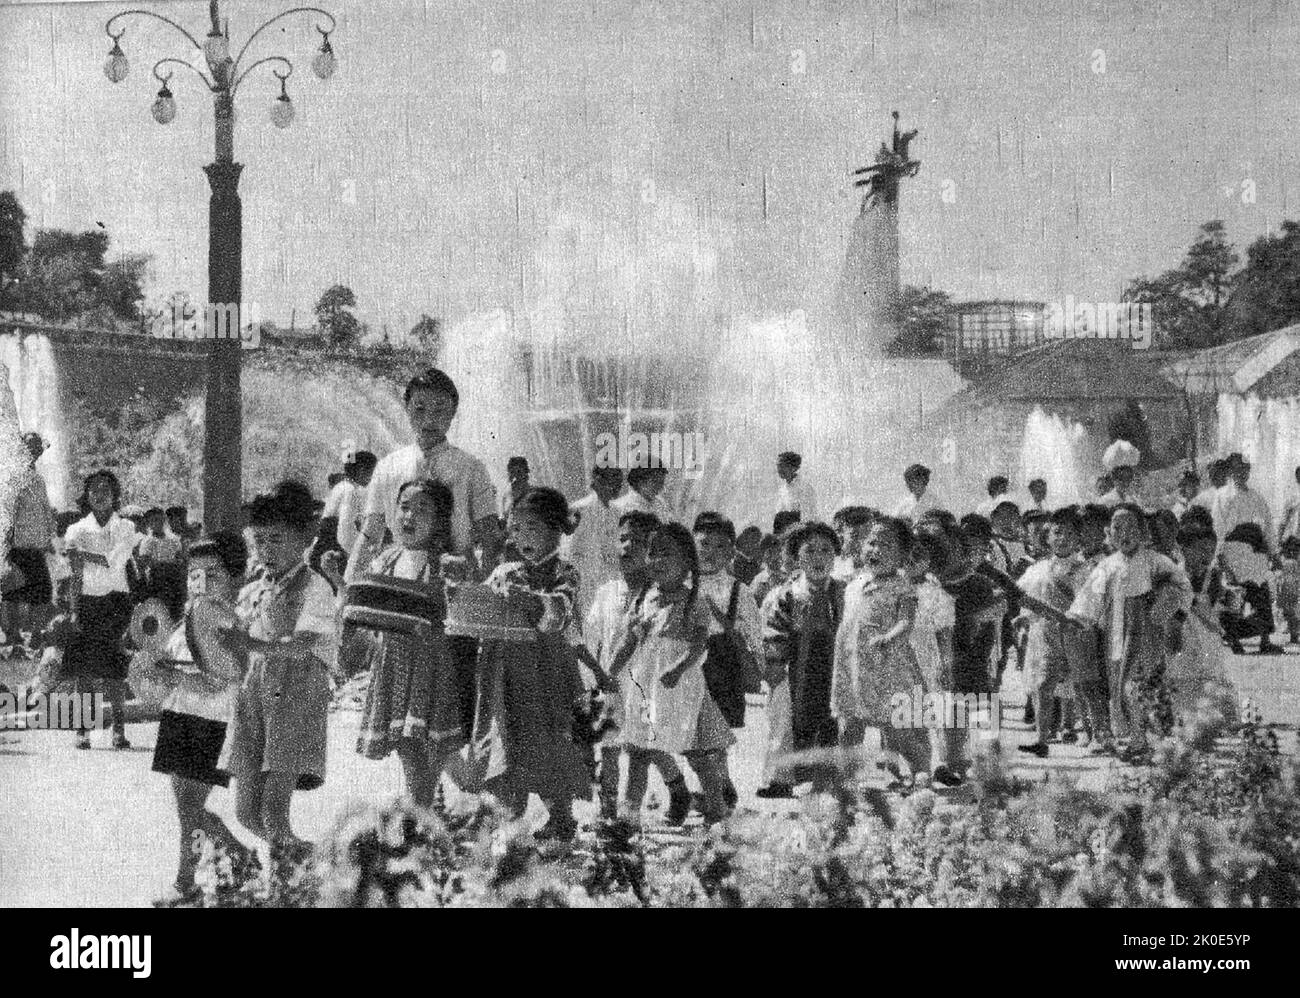 Foto der nationalen Feierlichkeiten in Pjöngjang, Nordkorea. Die Feierlichkeiten basieren auf dem Kult des Führers Kim Il Sung, 1961. Stockfoto